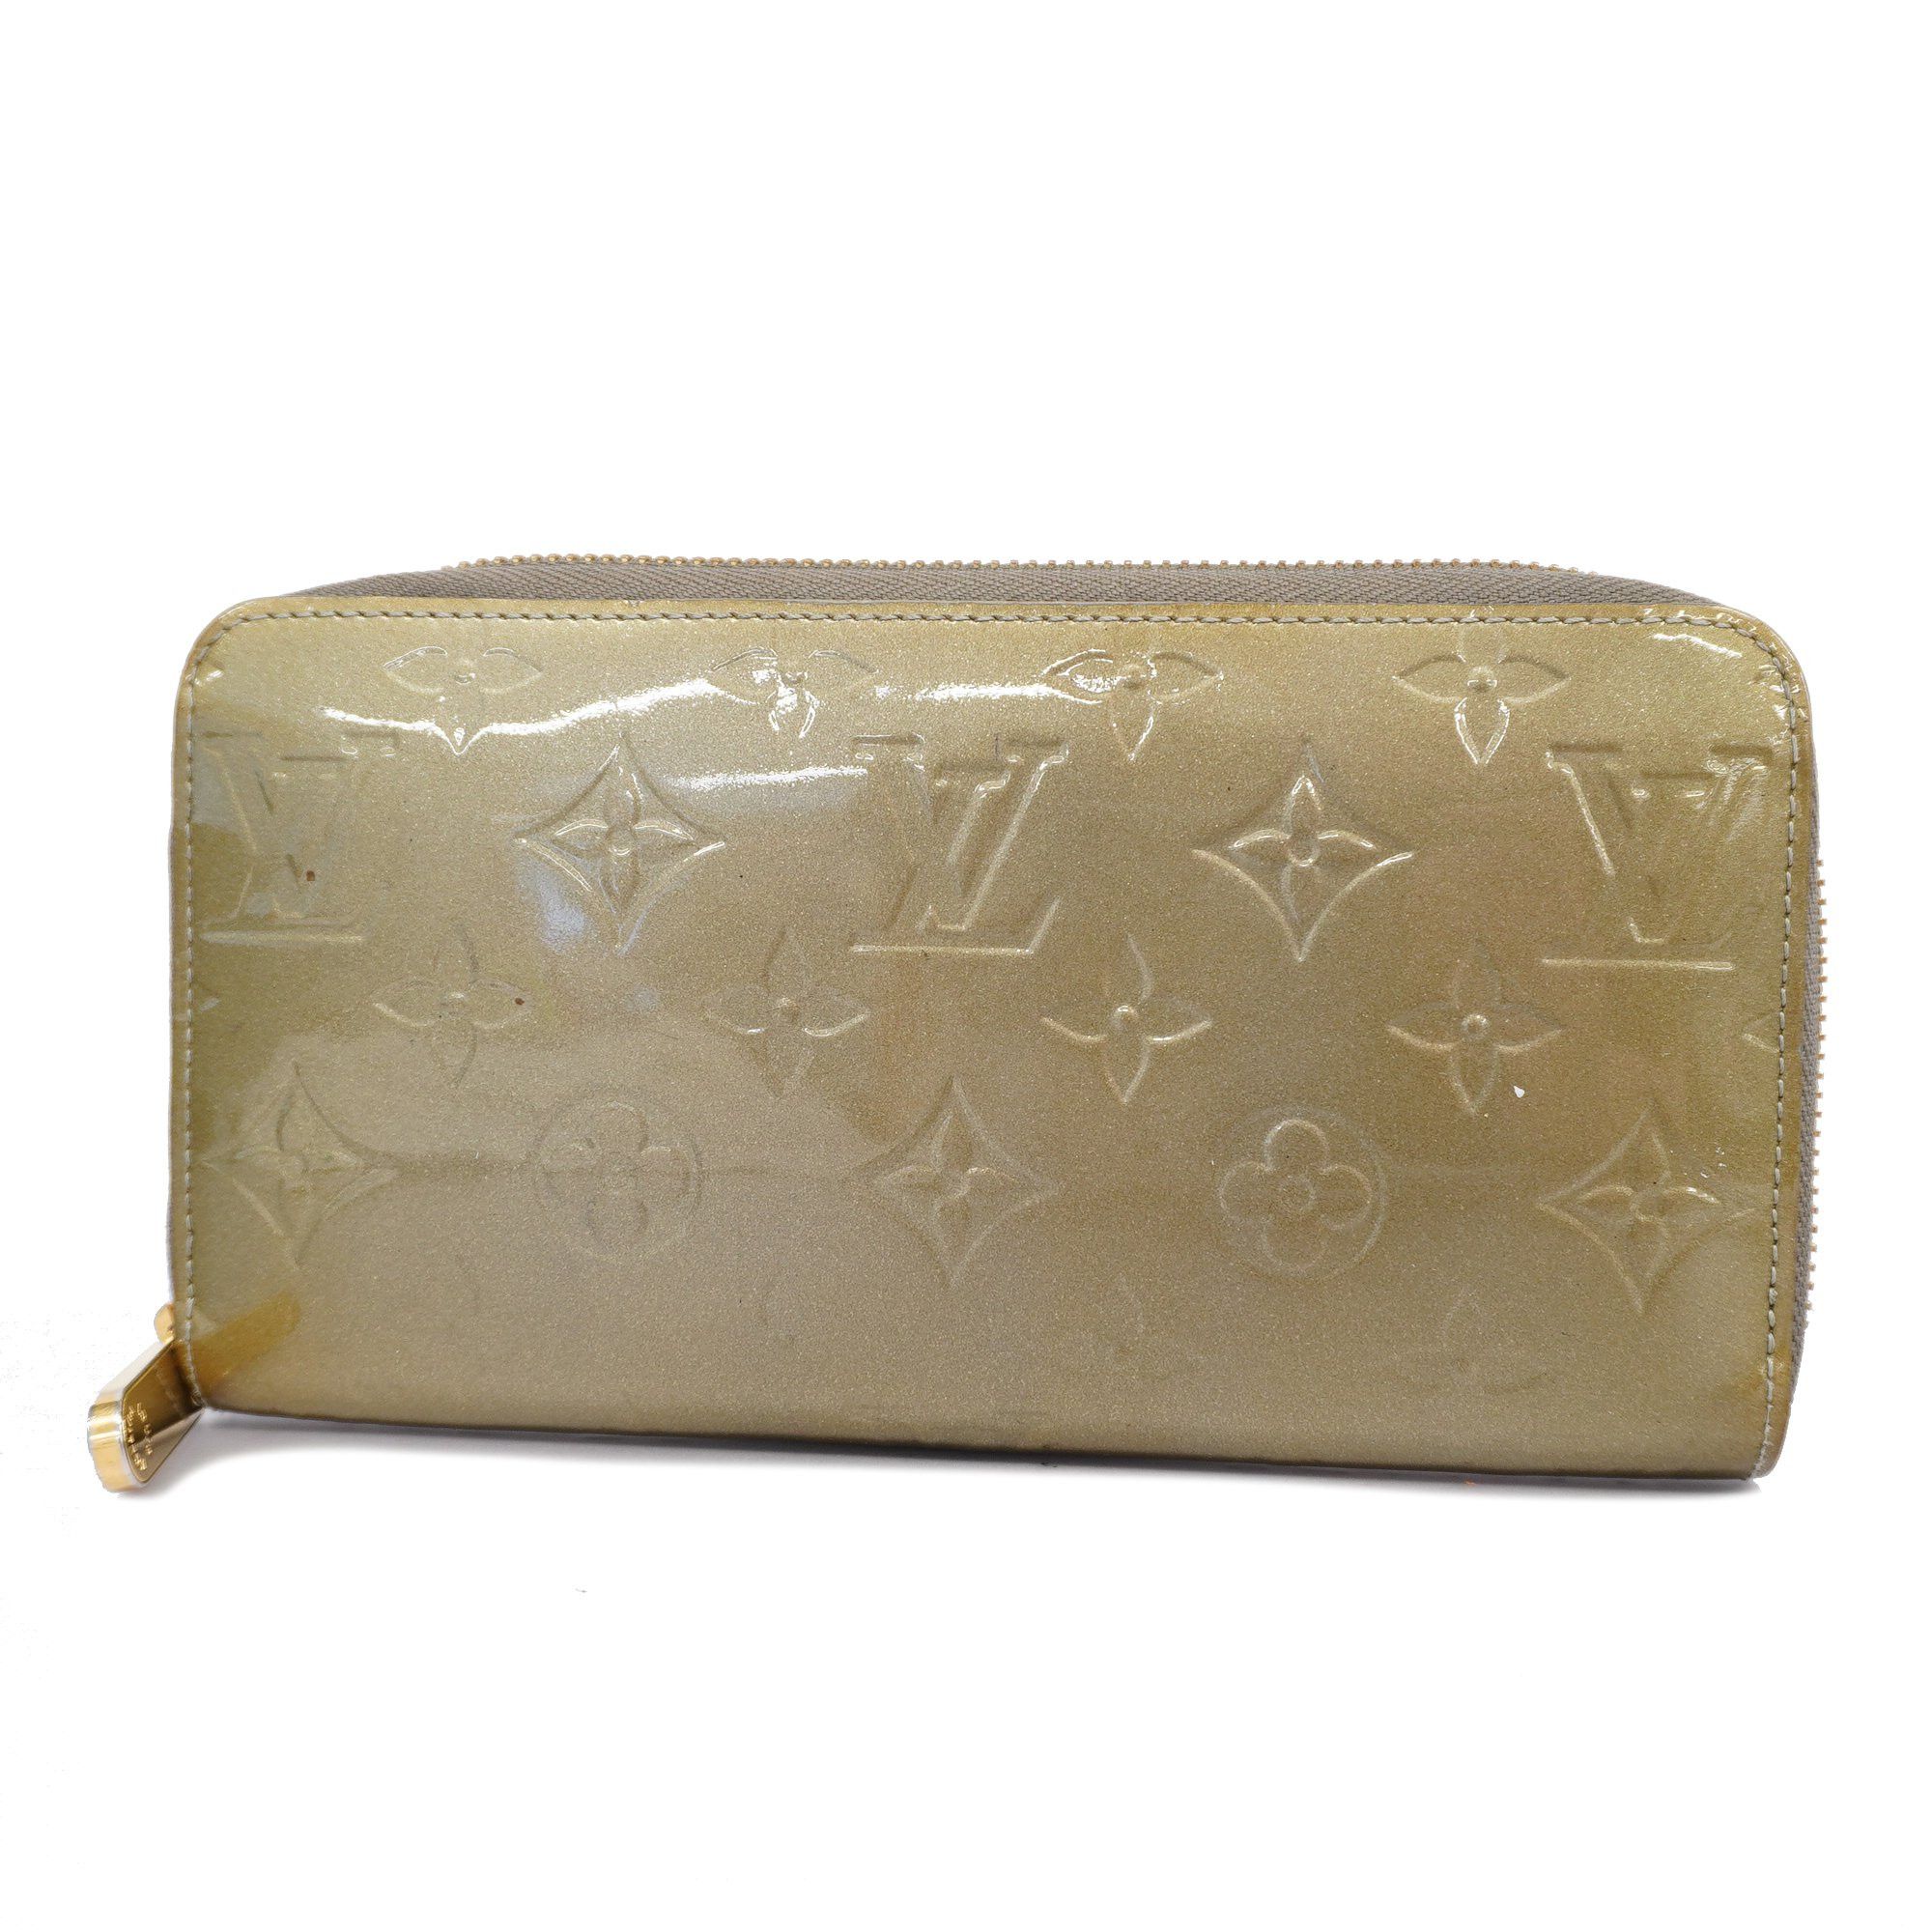 LOUIS VUITTON Curieuse Monogram Empreinte Leather Wallet Bronze